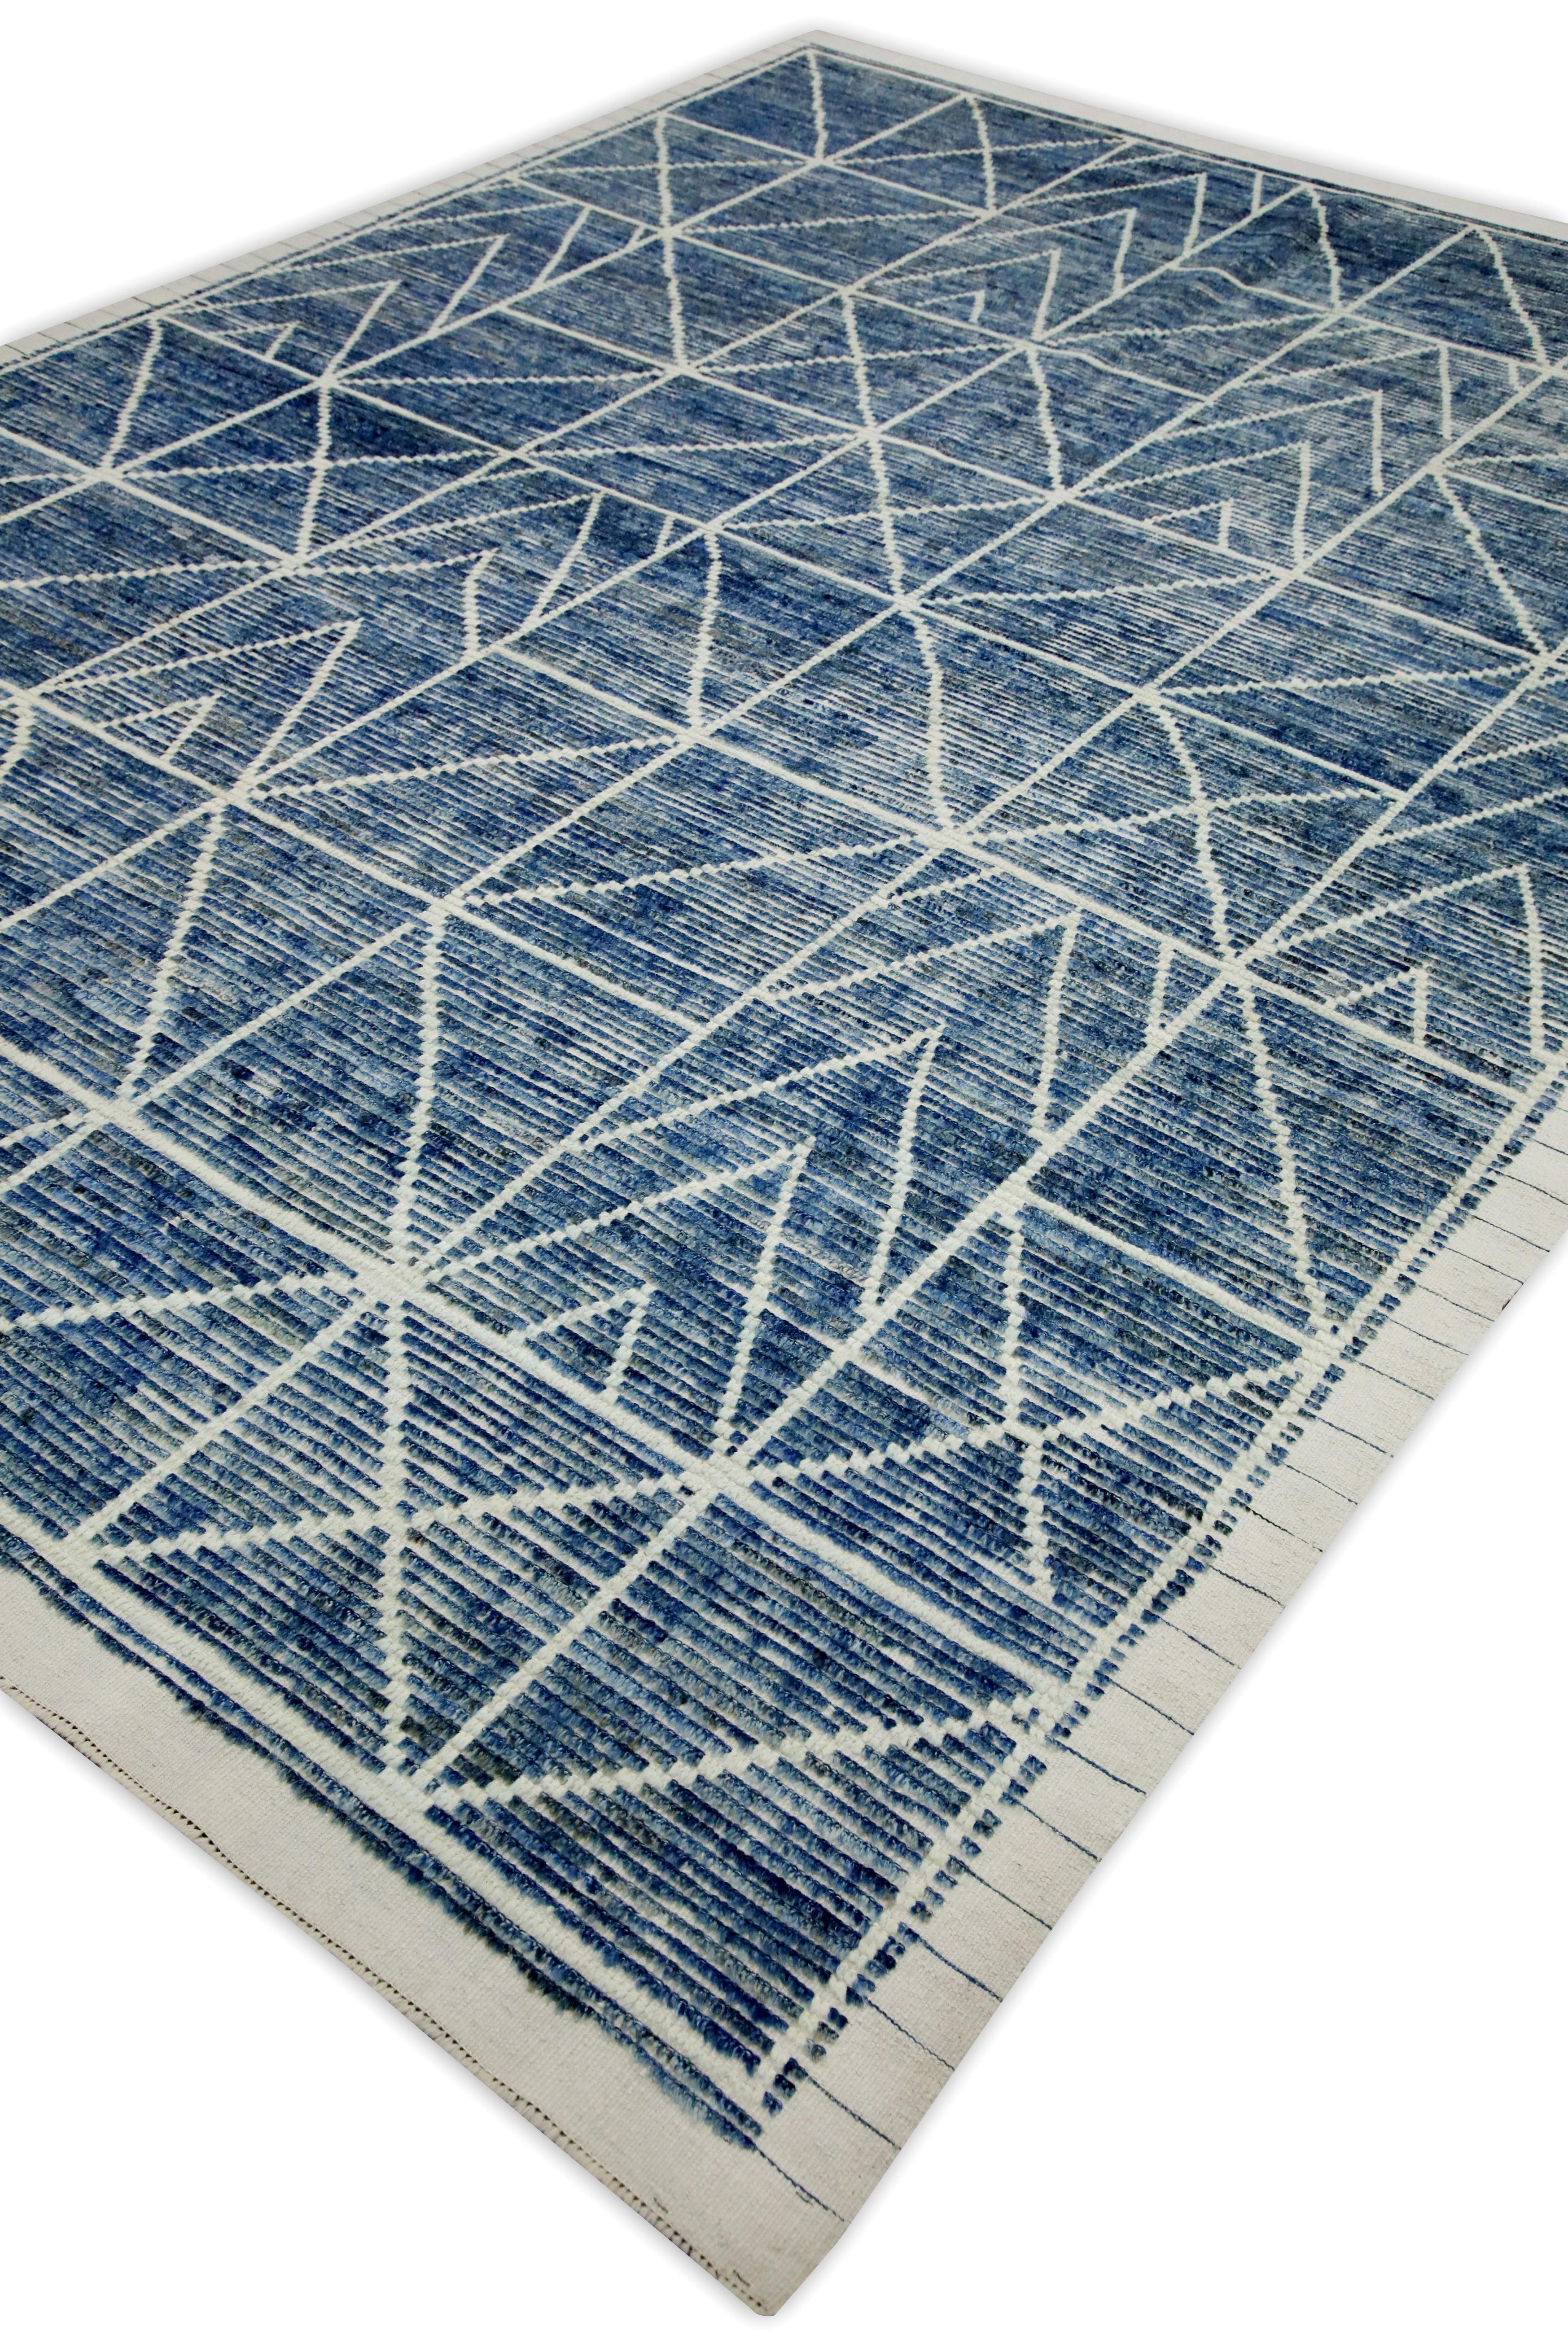 Vegetable Dyed Blue Handmade Wool Tulu Rug in Geometric Design 8' x 10'4